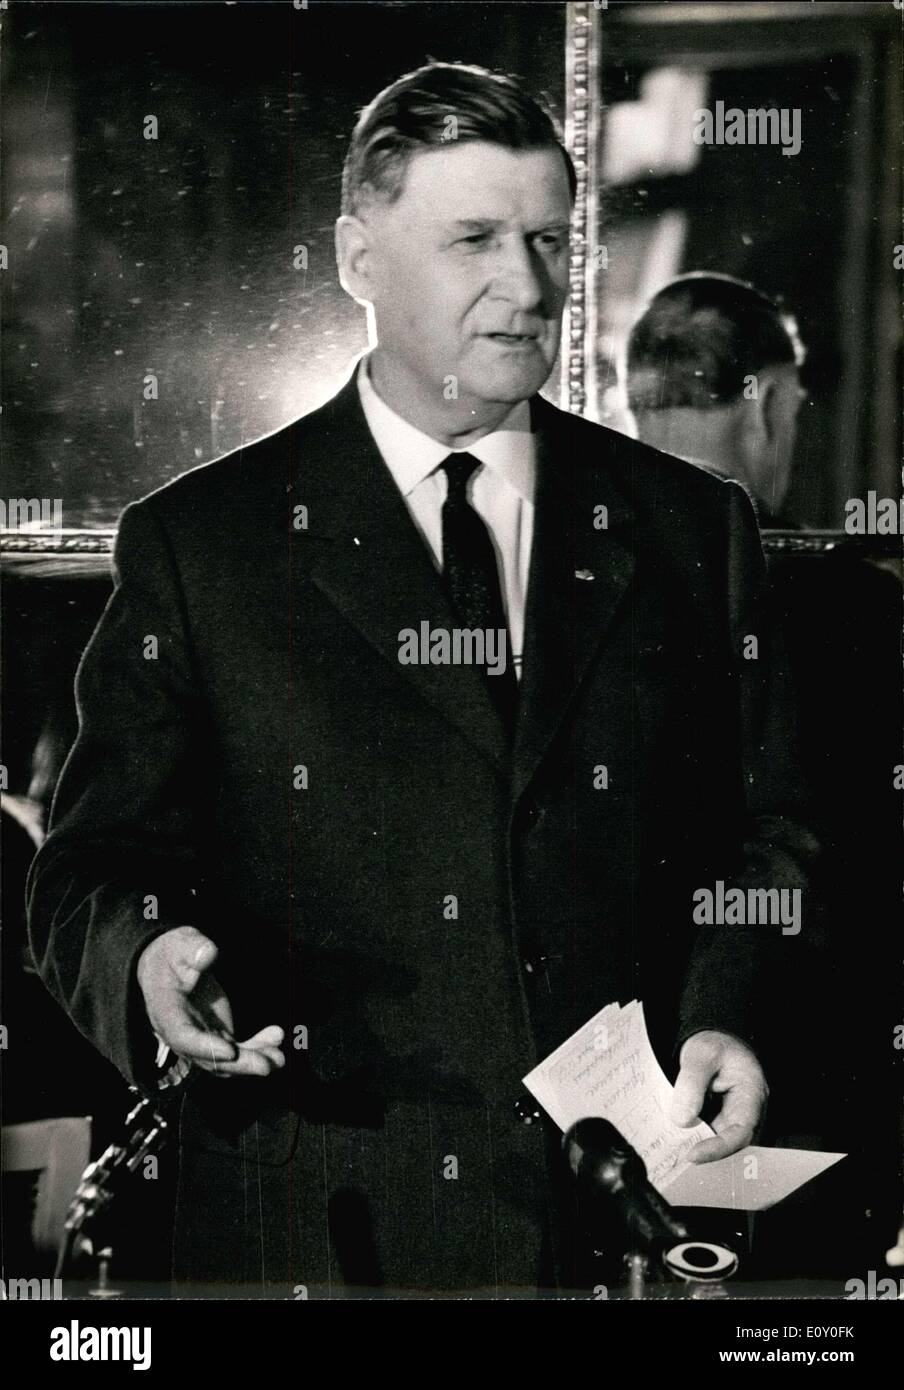 08 février 1968 - Vassily Sokolovsky(photo), le maréchal de l'Union soviétique a donné une conférence de presse à l'Hôtel Crillon ce jeudi. L'ancien Commandant suprême des forces armées soviétiques sont venus à Paris pour donner à la bibliothèque cinq volumes qui détaillent le rôle de l'Union soviétique dans la seconde guerre mondiale, qui était une collaboration de 16 maréchaux soviétique. Banque D'Images